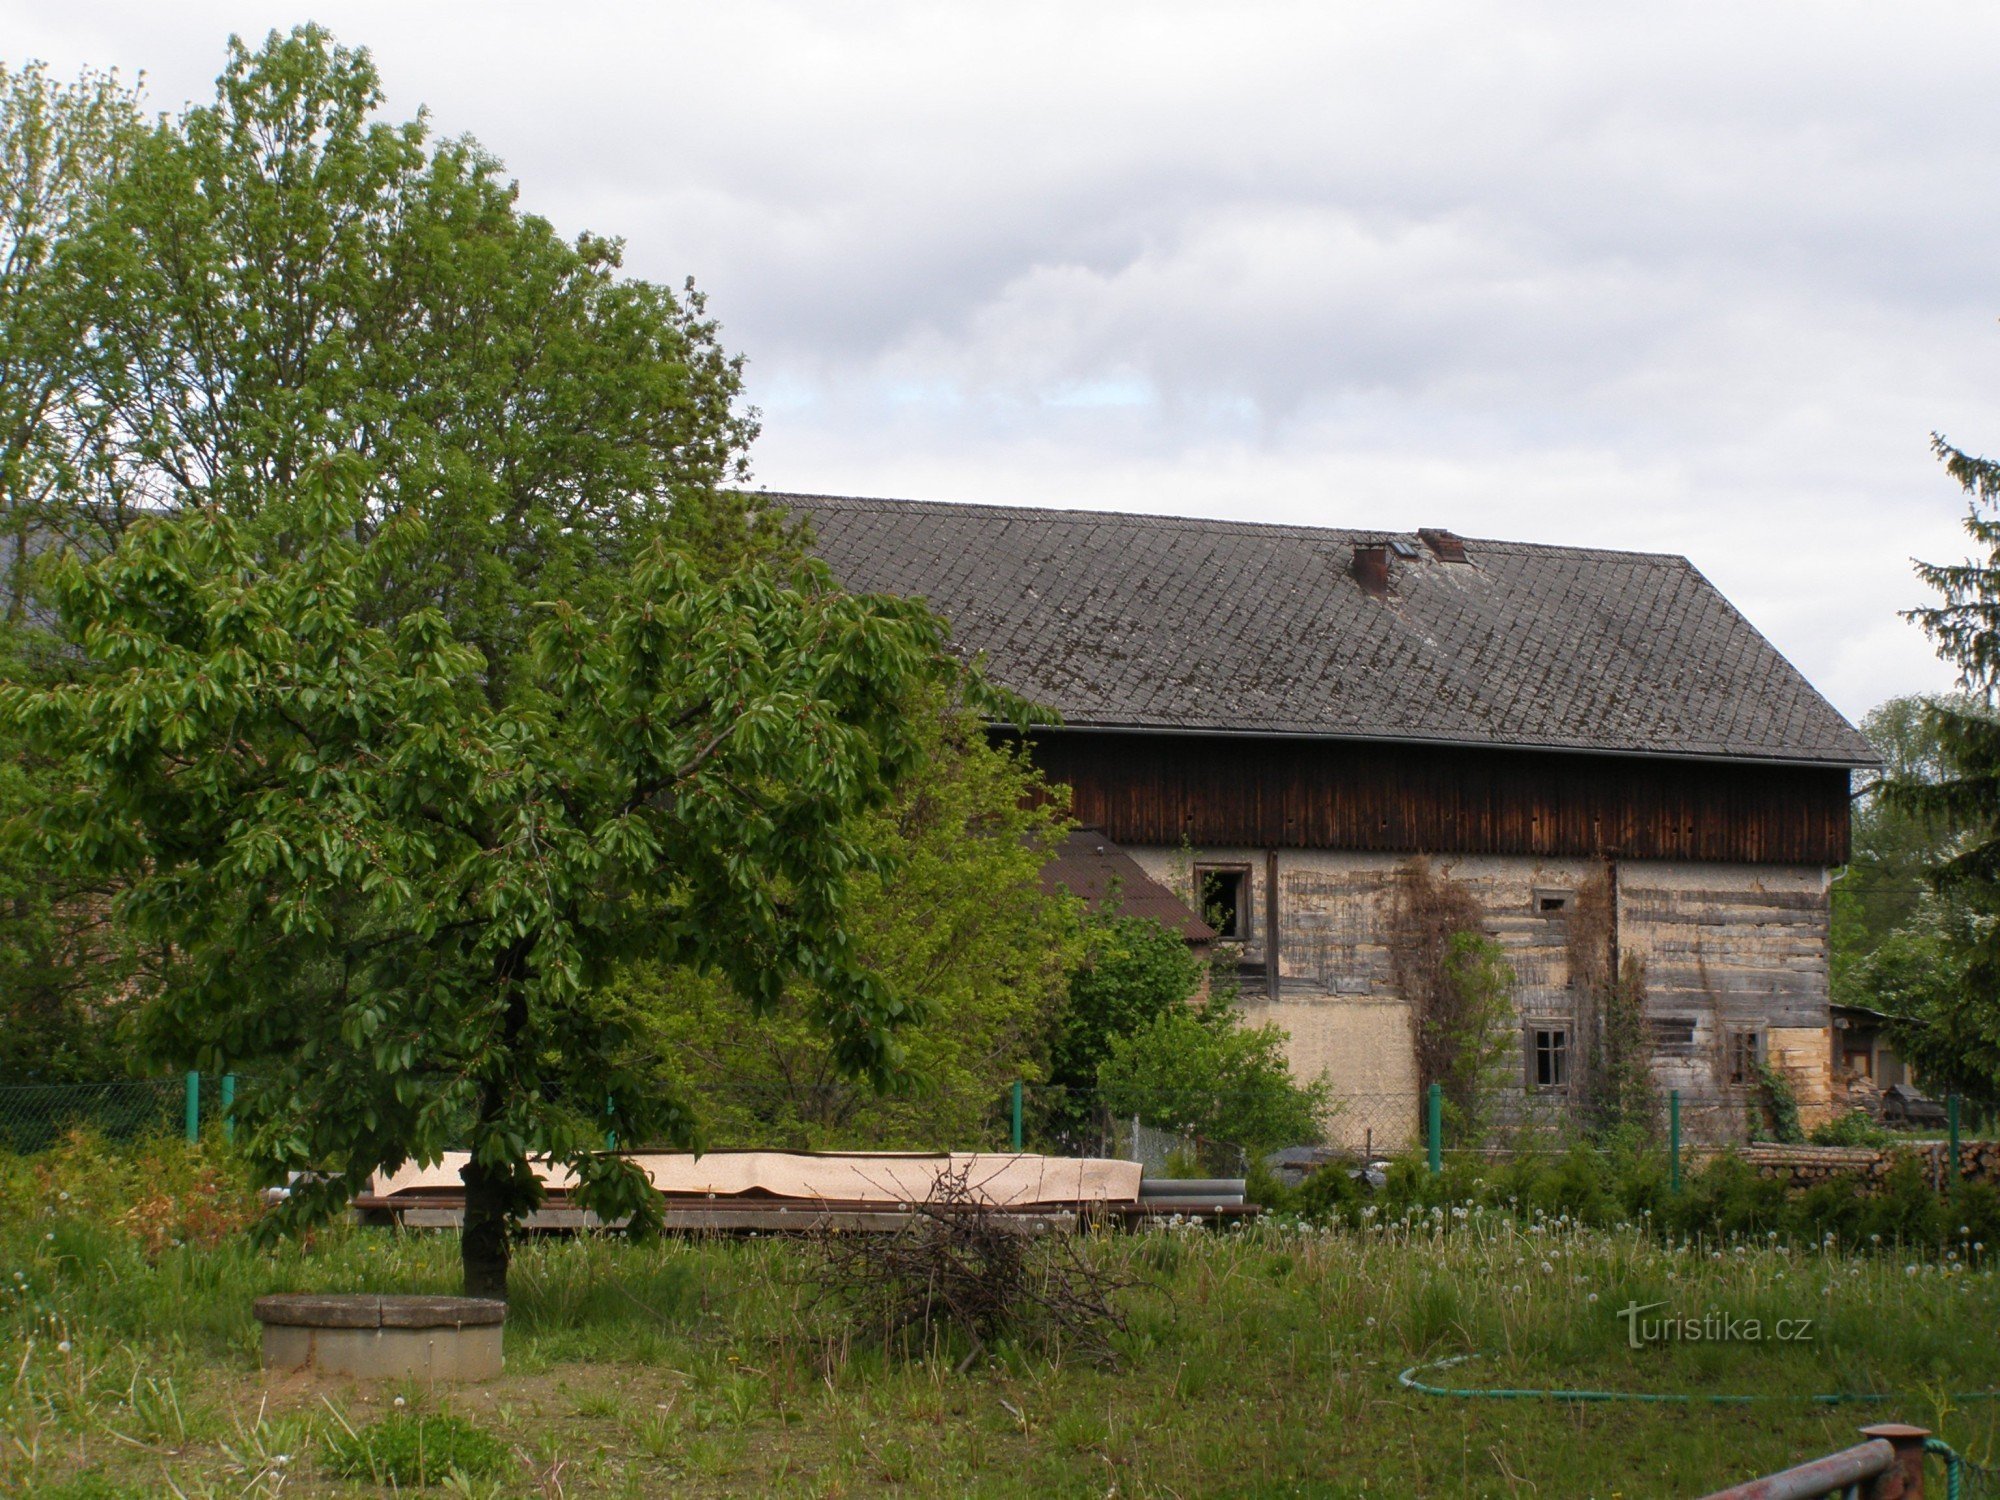 Boharyné - träkvarn